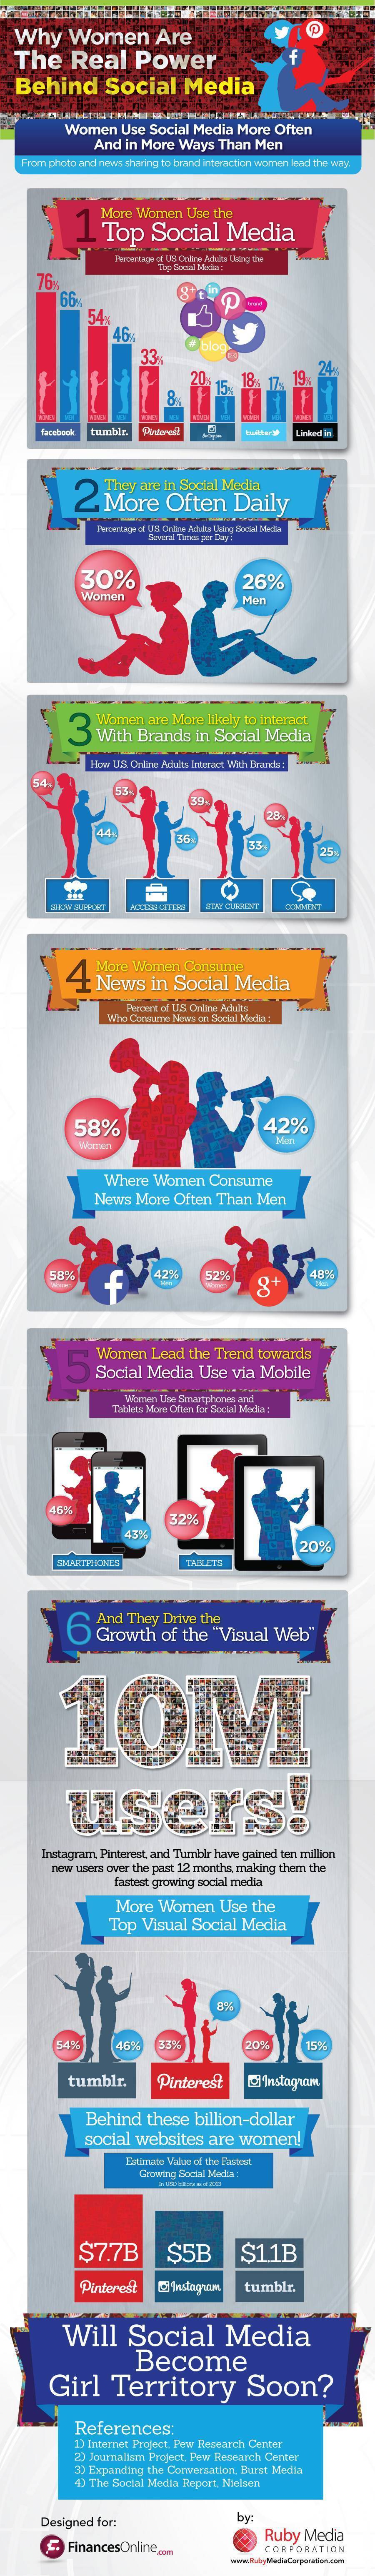 women-social-media1[1]